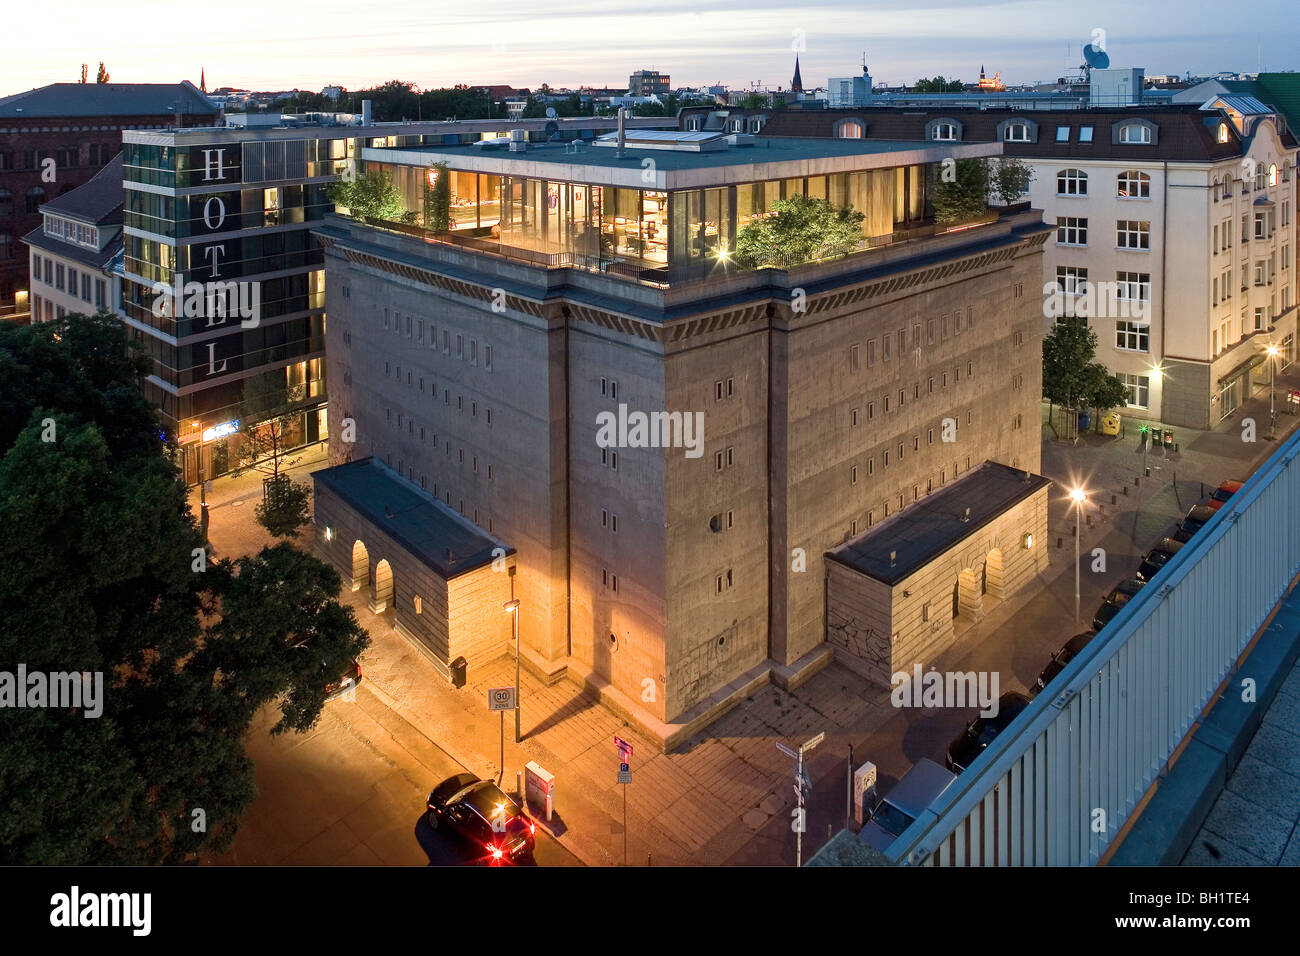 Le Bunker est dans Berlin Mitte et est une salle d'exposition pour la collection d'art contemporain de Christian Boros, displaye Banque D'Images